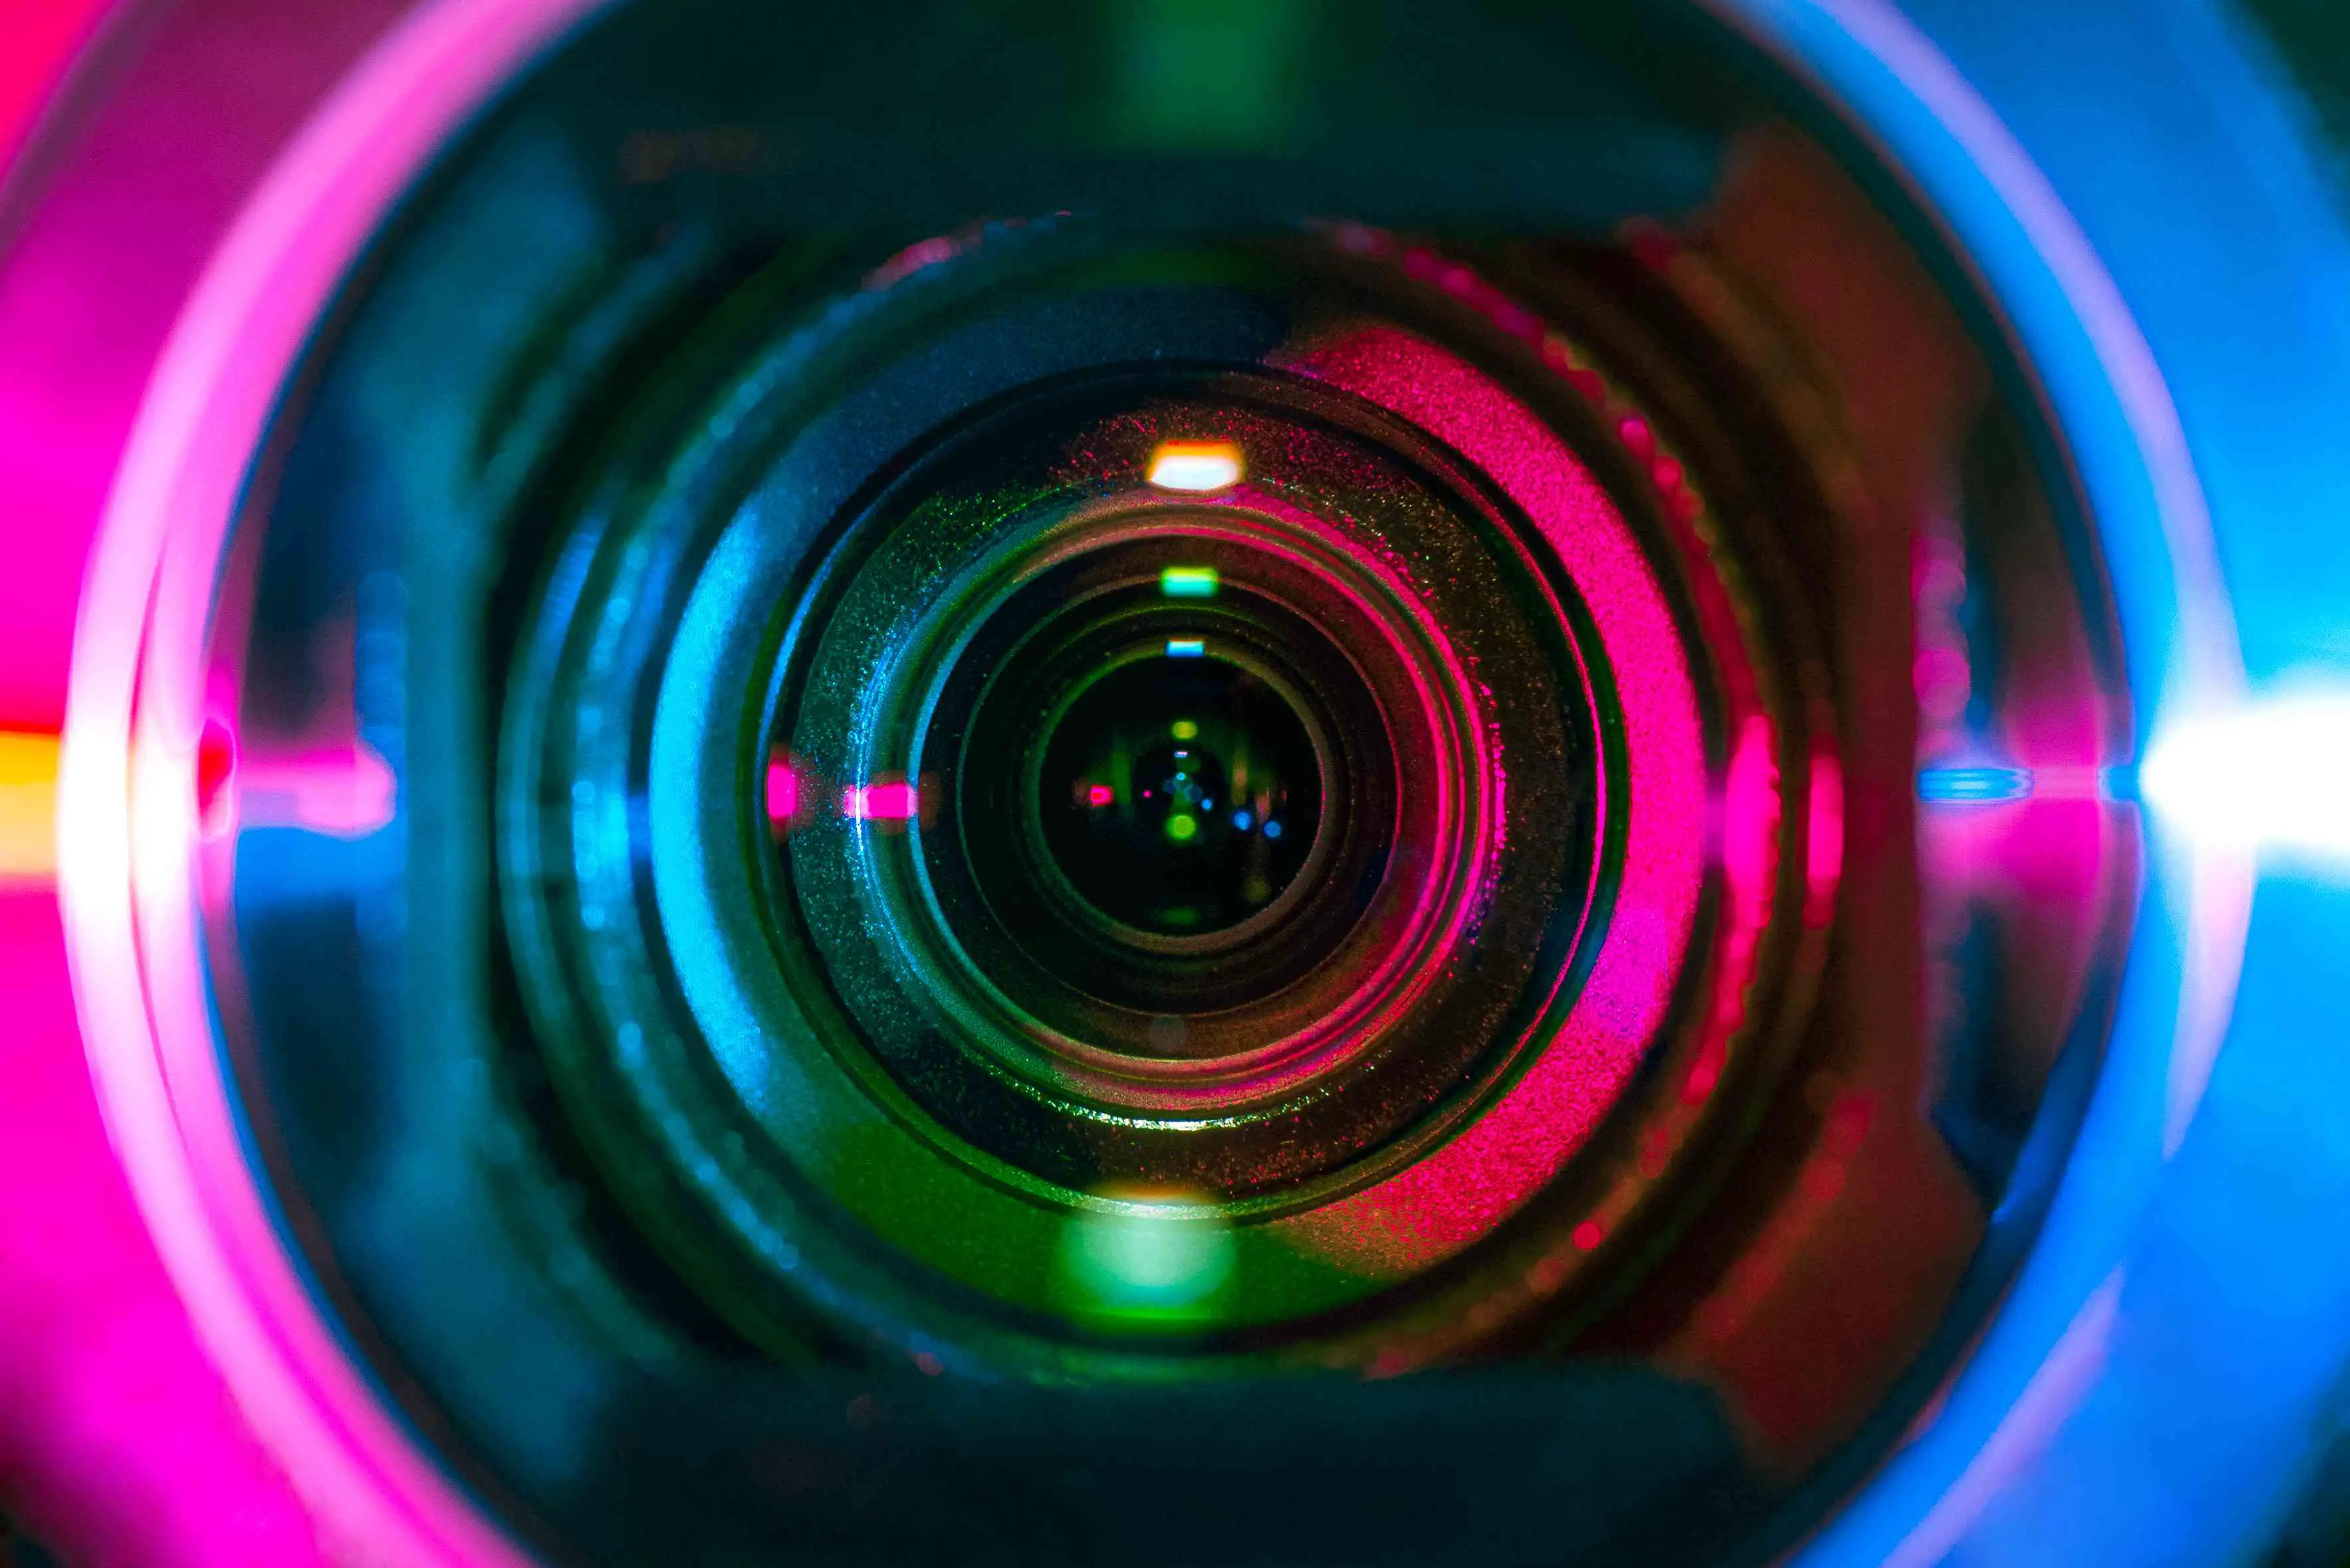 Fotografia de close-up extremo retratando o interior da lente de uma câmera